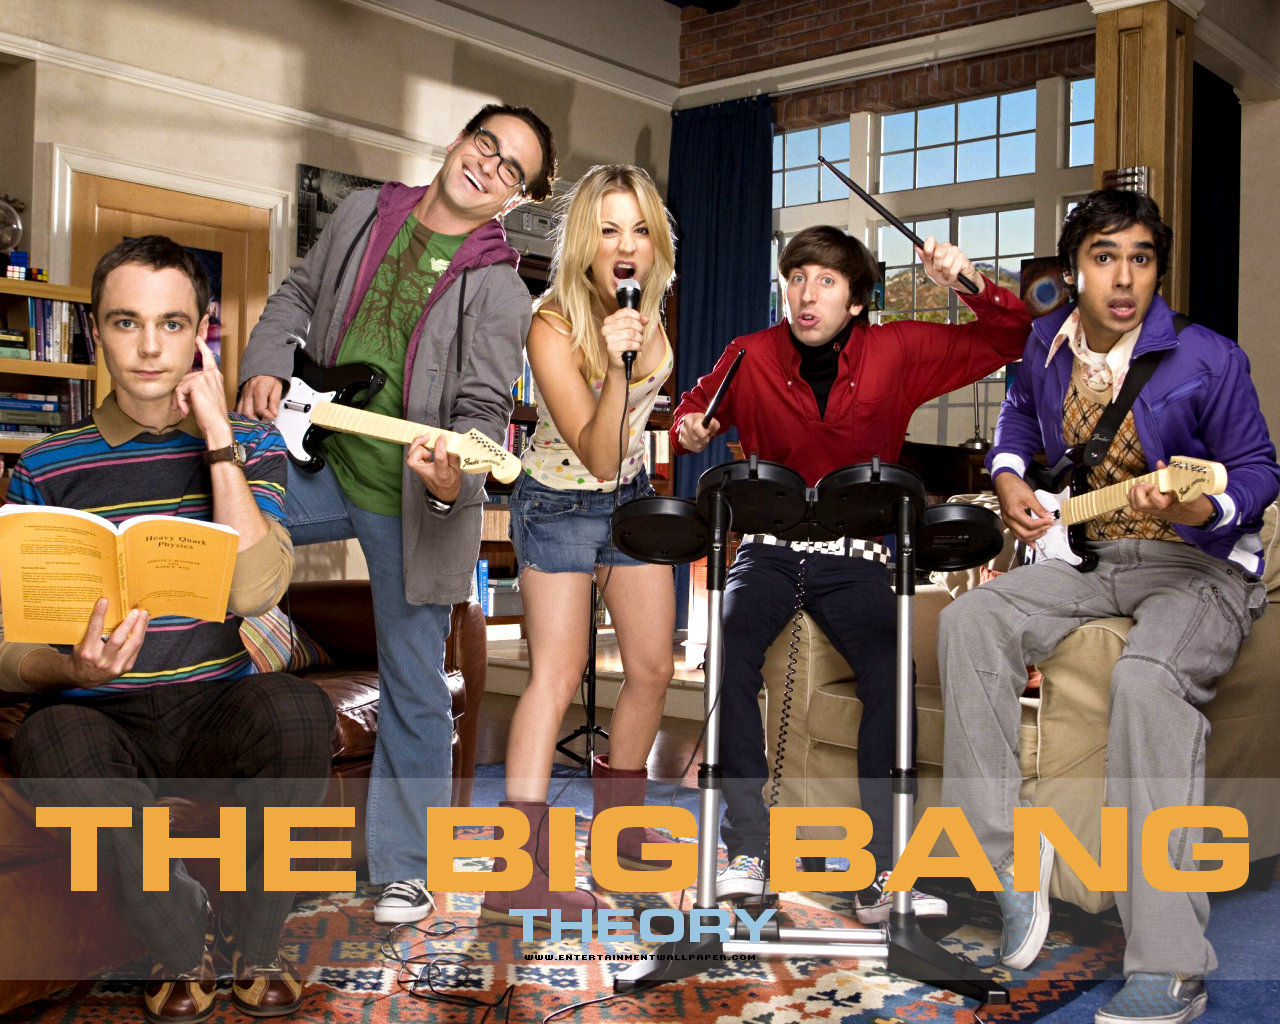 Big Bang Theory Wallpaper Size More The